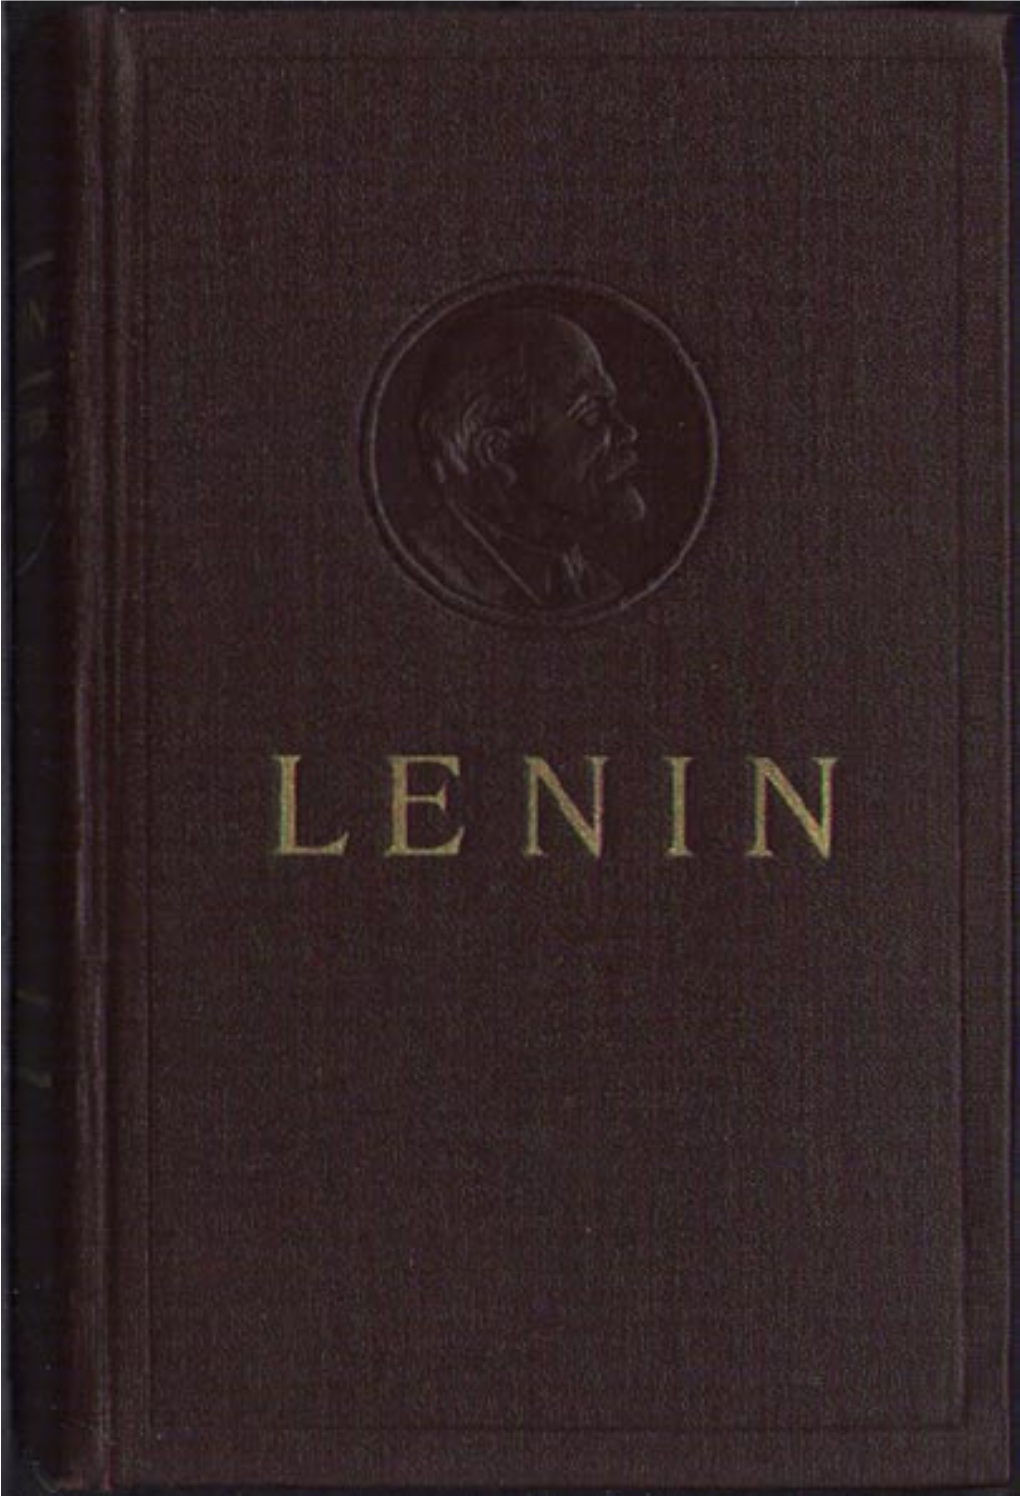 Collected Works of V. I. Lenin